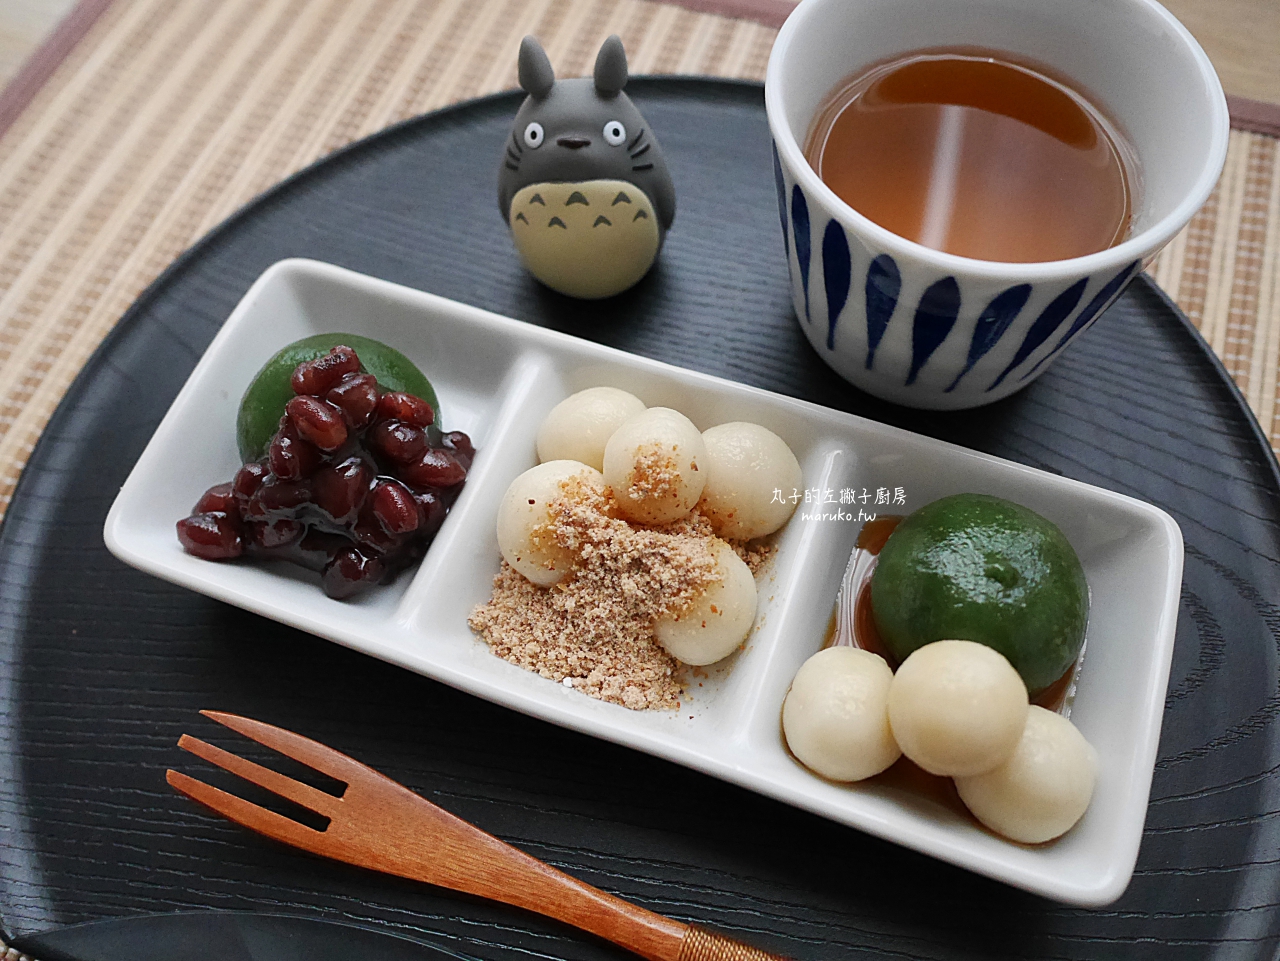 【食譜】和風醬燒豬肉丼｜運用器皿創造質感生活的簡單事 @Maruko與美食有個約會